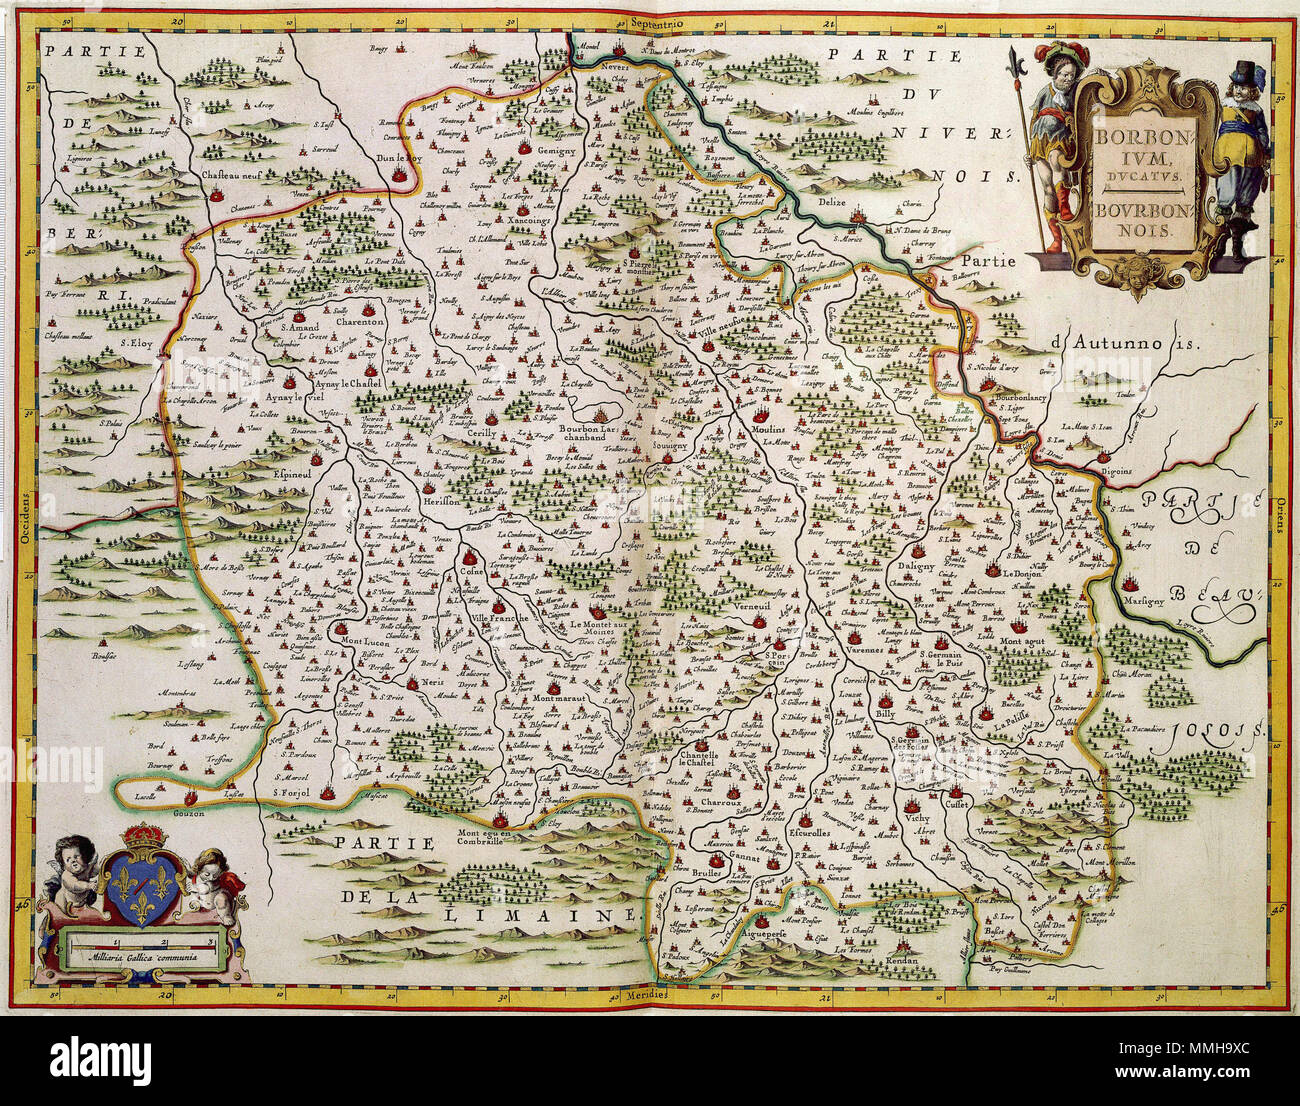 . Nederlands: Deze kaart werd vanaf 1631 porta Willem Jansz. Blaeu (1571-1638) en Joan Blaeu (1598-1673) verspreid. De afbeelding werd gekopieerd naar verschillende atlaskaarten morire nel 1619 door de uitgever Parijse Jean Leclerc (1560-1621/22) in omloop waren gebracht. Inglese: Questa mappa è stata pubblicata dal 1631 da Willem Jansz. Blaeu (1571-1638) e Joan Blaeu (1598-1673). L'immagine è stata copiata da varie carte di atlante pubblicato nel 1619 da Jean Leclerc (1560-1621/22). BORBON- TVM DVCATVS BOURBON- NOIS. 1631. Atlas Van der Hagen-KW1049B12 038-BORBON- TVM DVCATVS BOURBON- NOIS Foto Stock